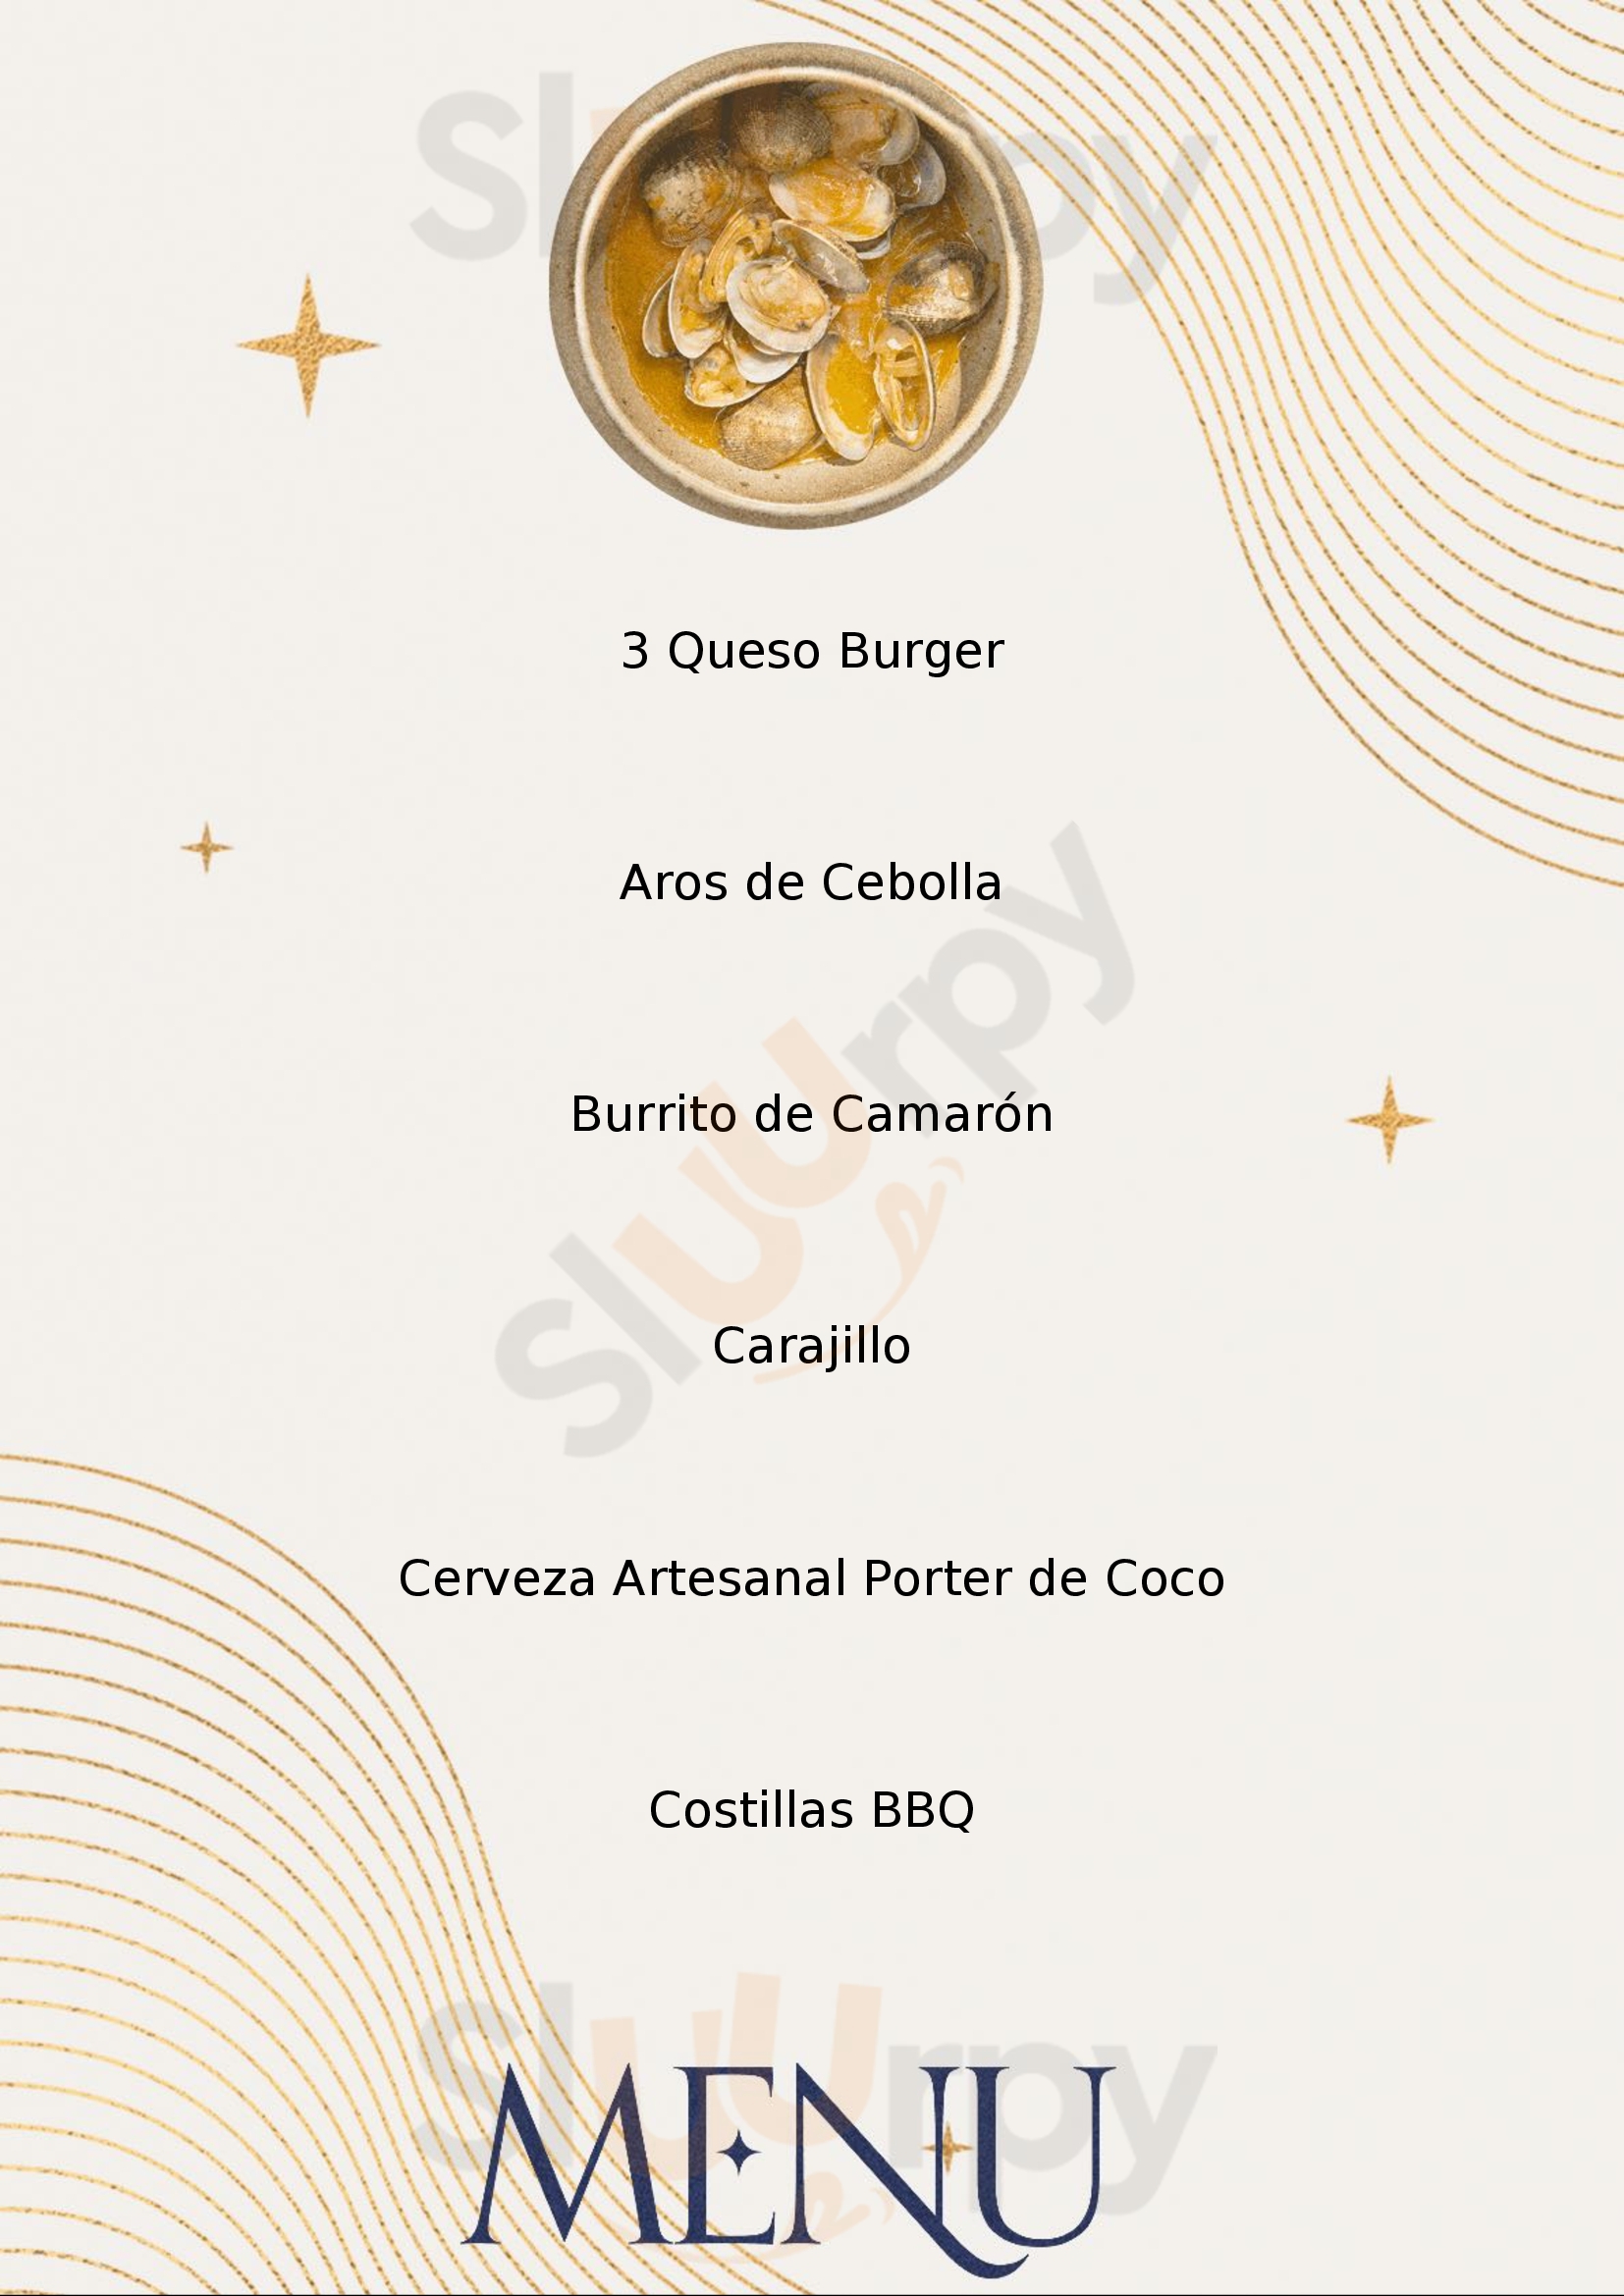 La Lata Burger Nuevo Vallarta Menu - 1